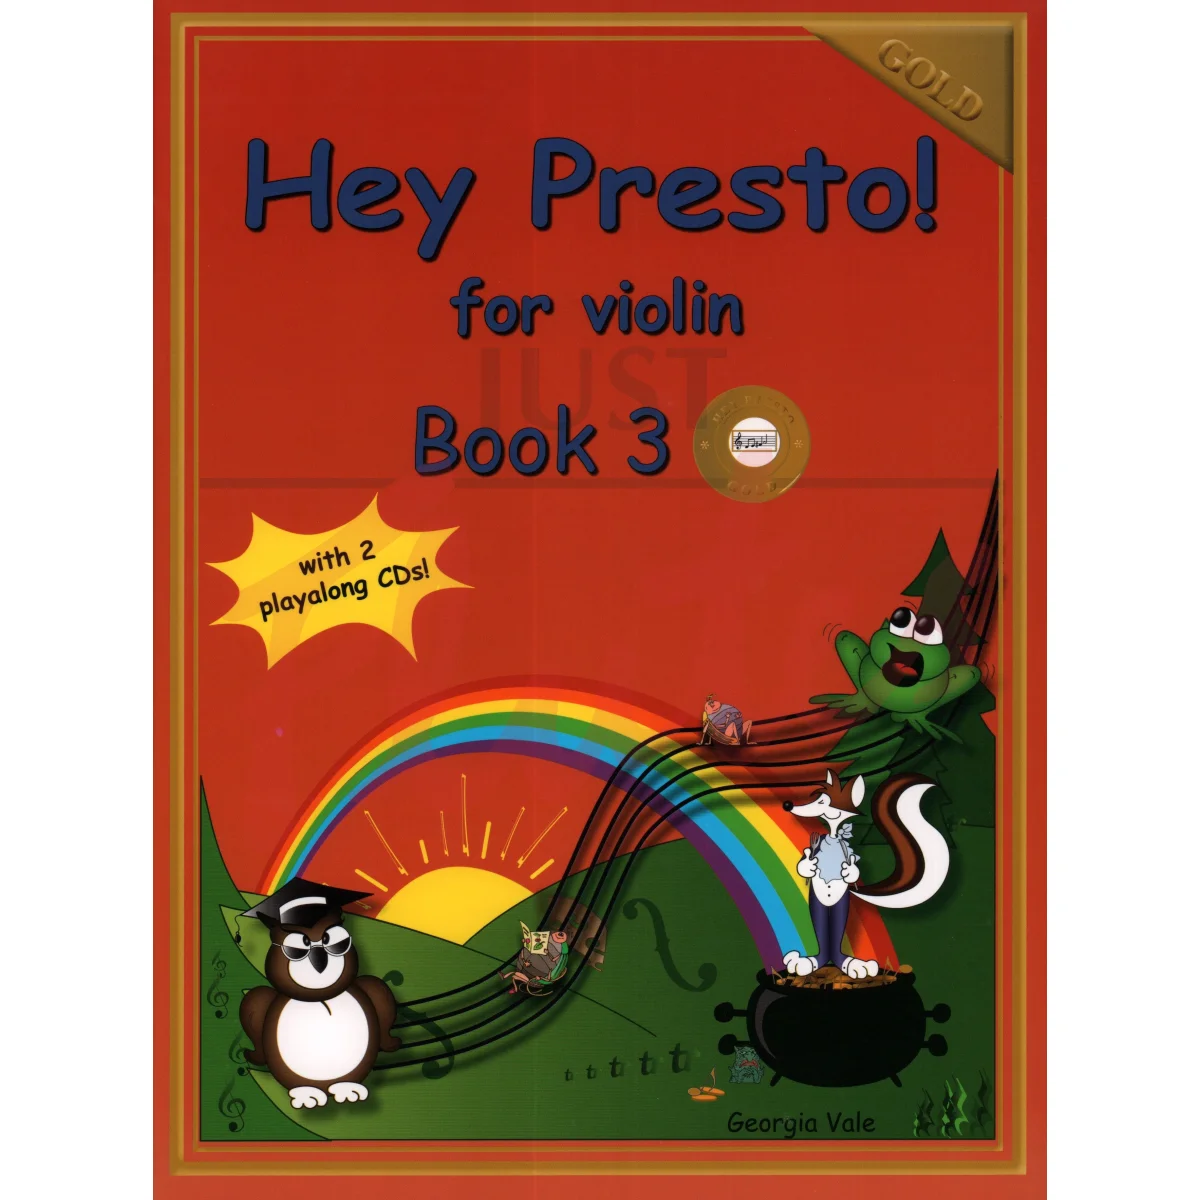 Hey Presto! for Violin Book 3 (Gold)